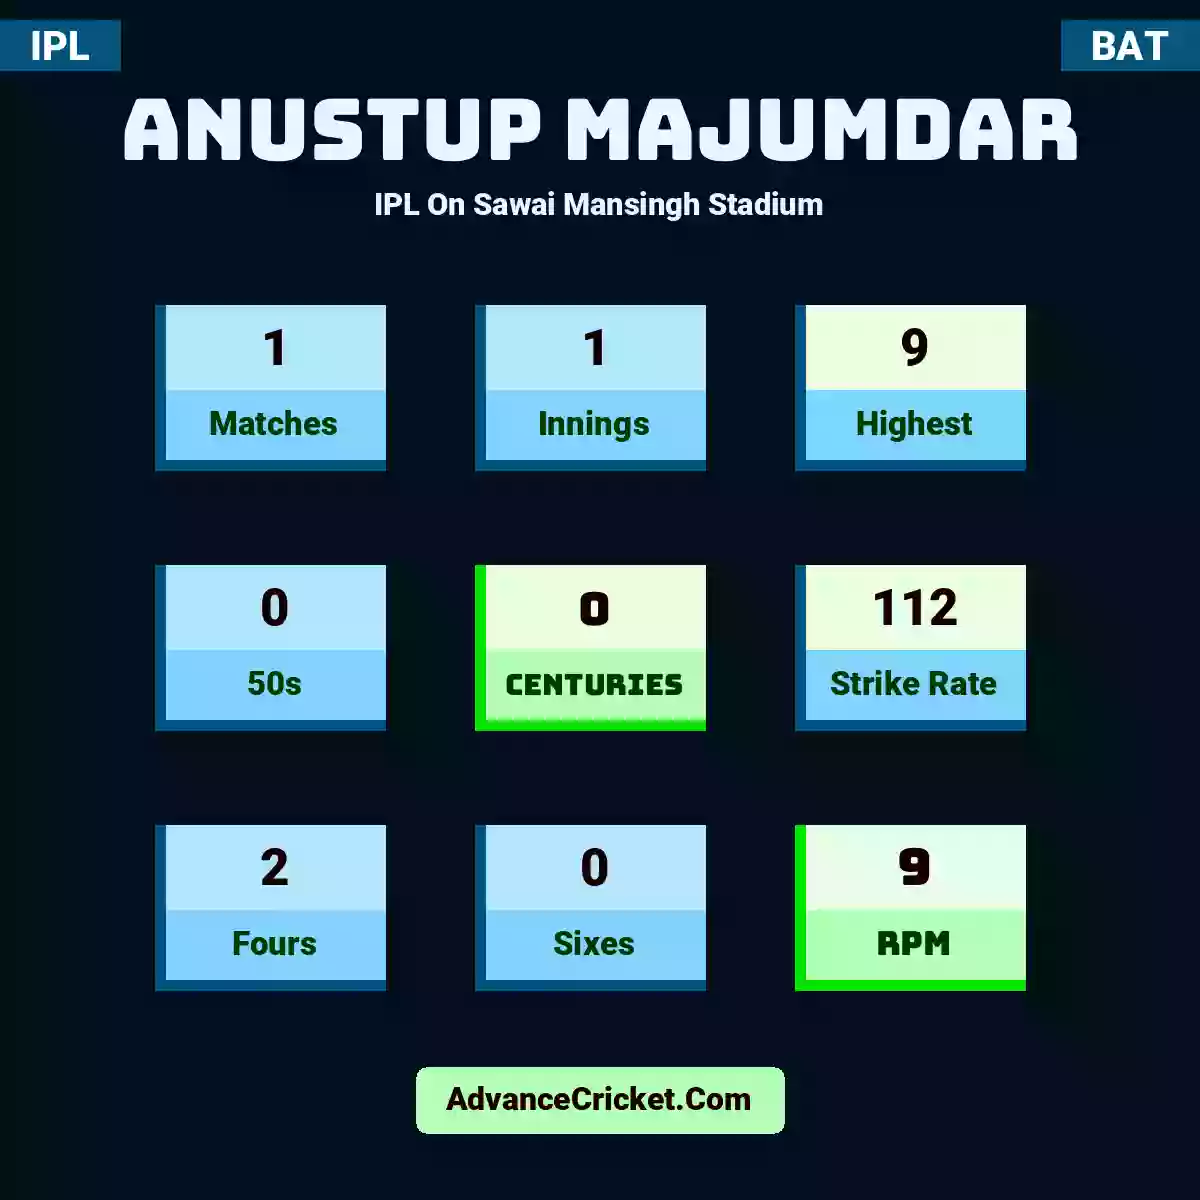 Anustup Majumdar IPL  On Sawai Mansingh Stadium, Anustup Majumdar played 1 matches, scored 9 runs as highest, 0 half-centuries, and 0 centuries, with a strike rate of 112. A.Majumdar hit 2 fours and 0 sixes, with an RPM of 9.